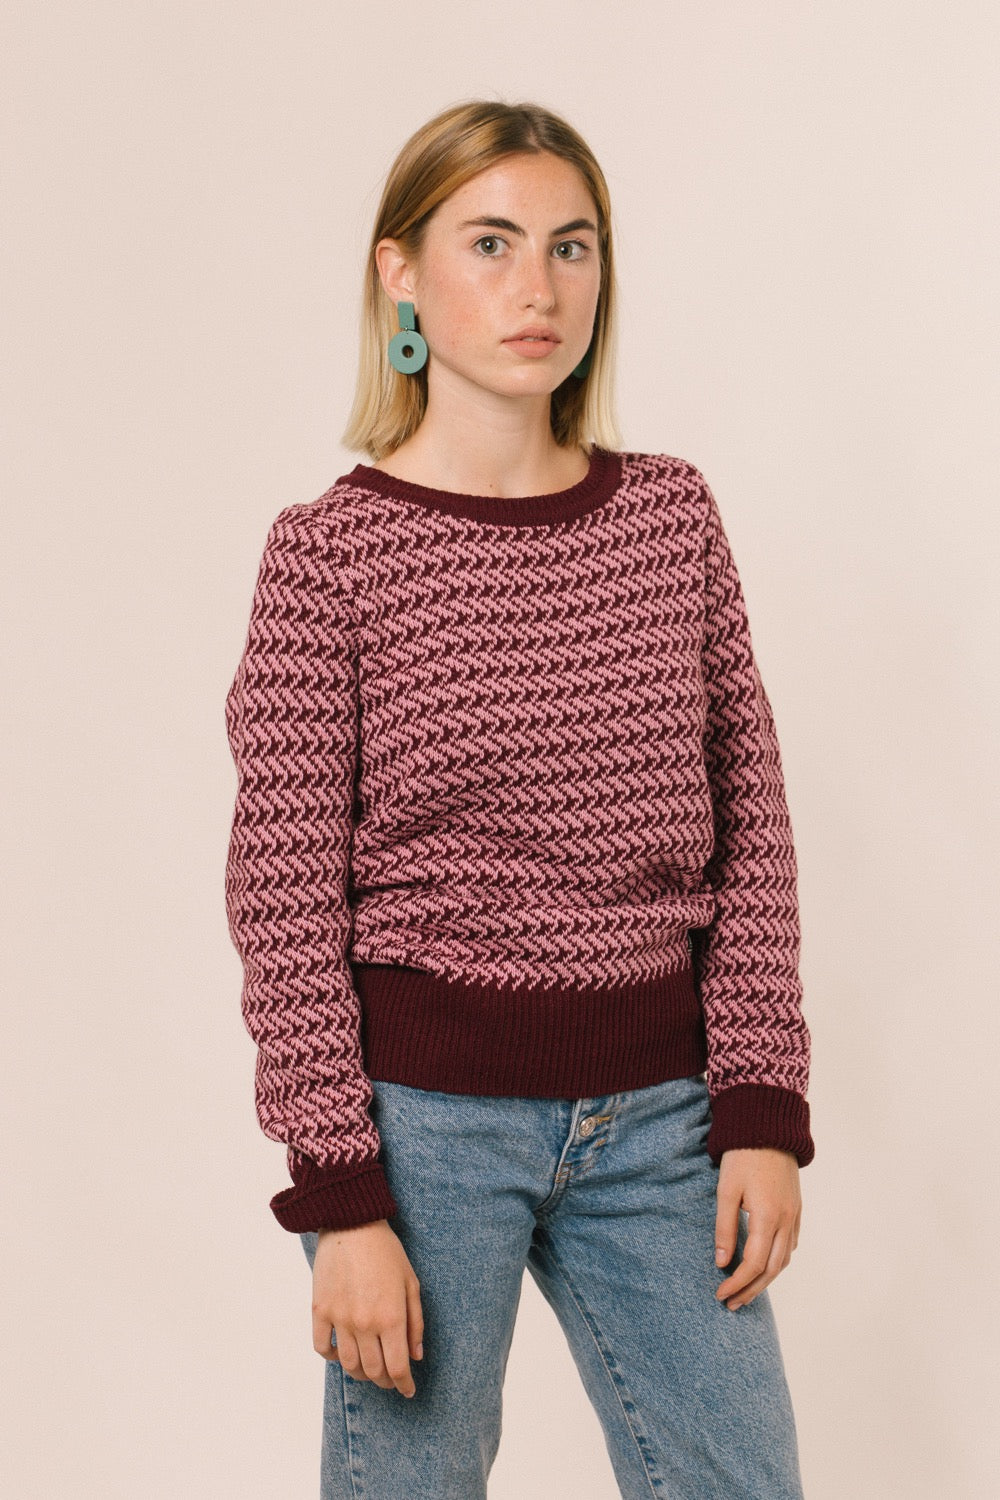 Noia amb el jersei, un clàssic però el color rosa li dona un toc diferent. 